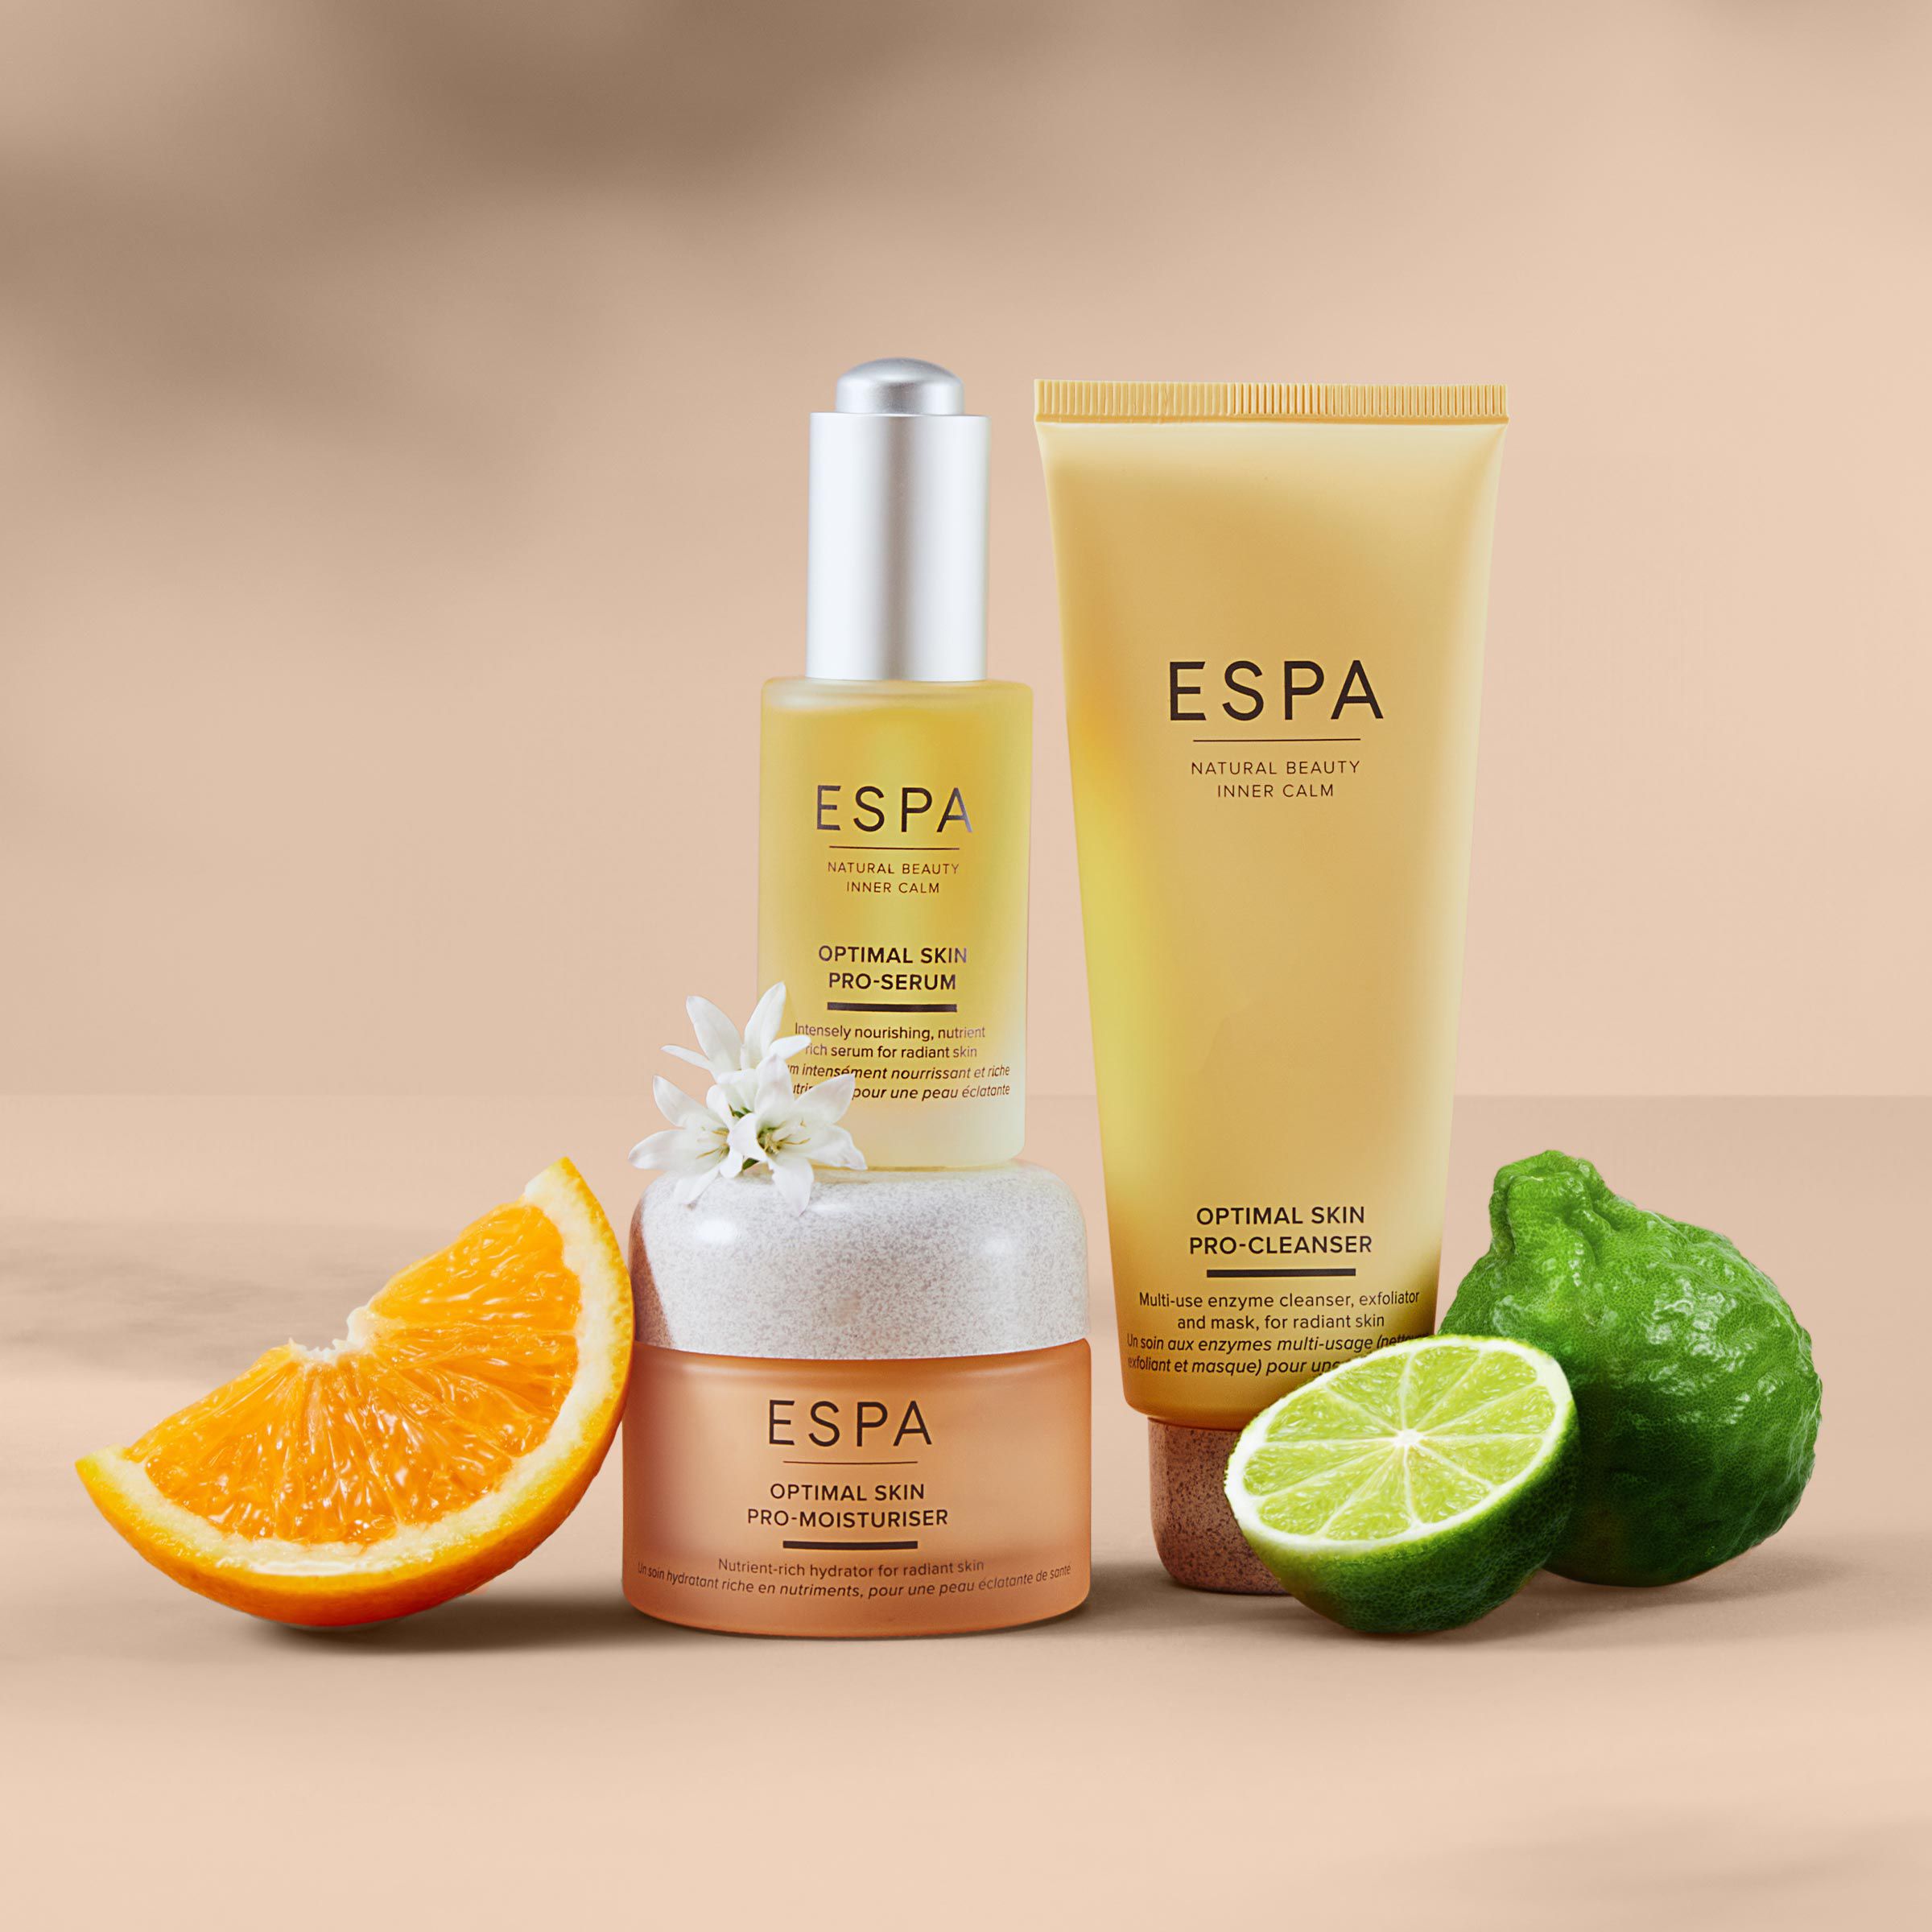 ESPA skincare products